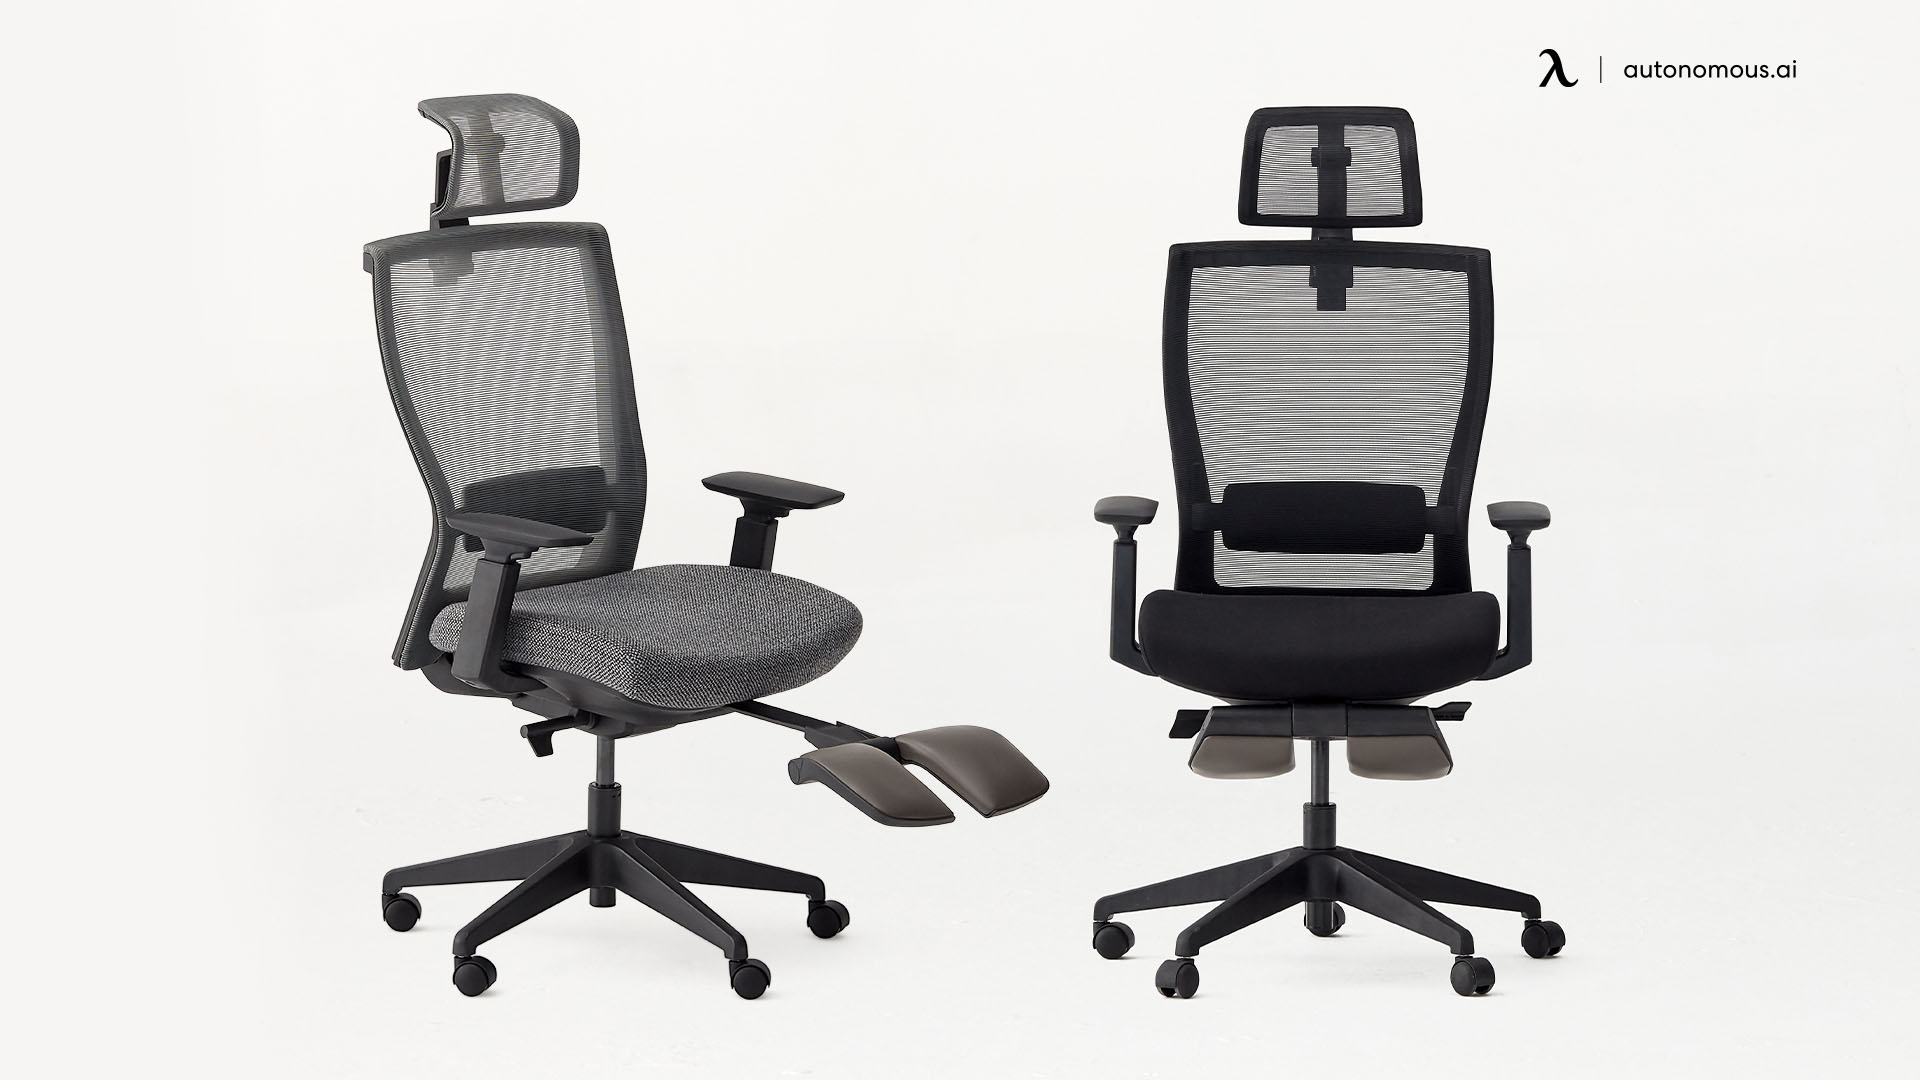 ErgoChair Recliner durable office chair